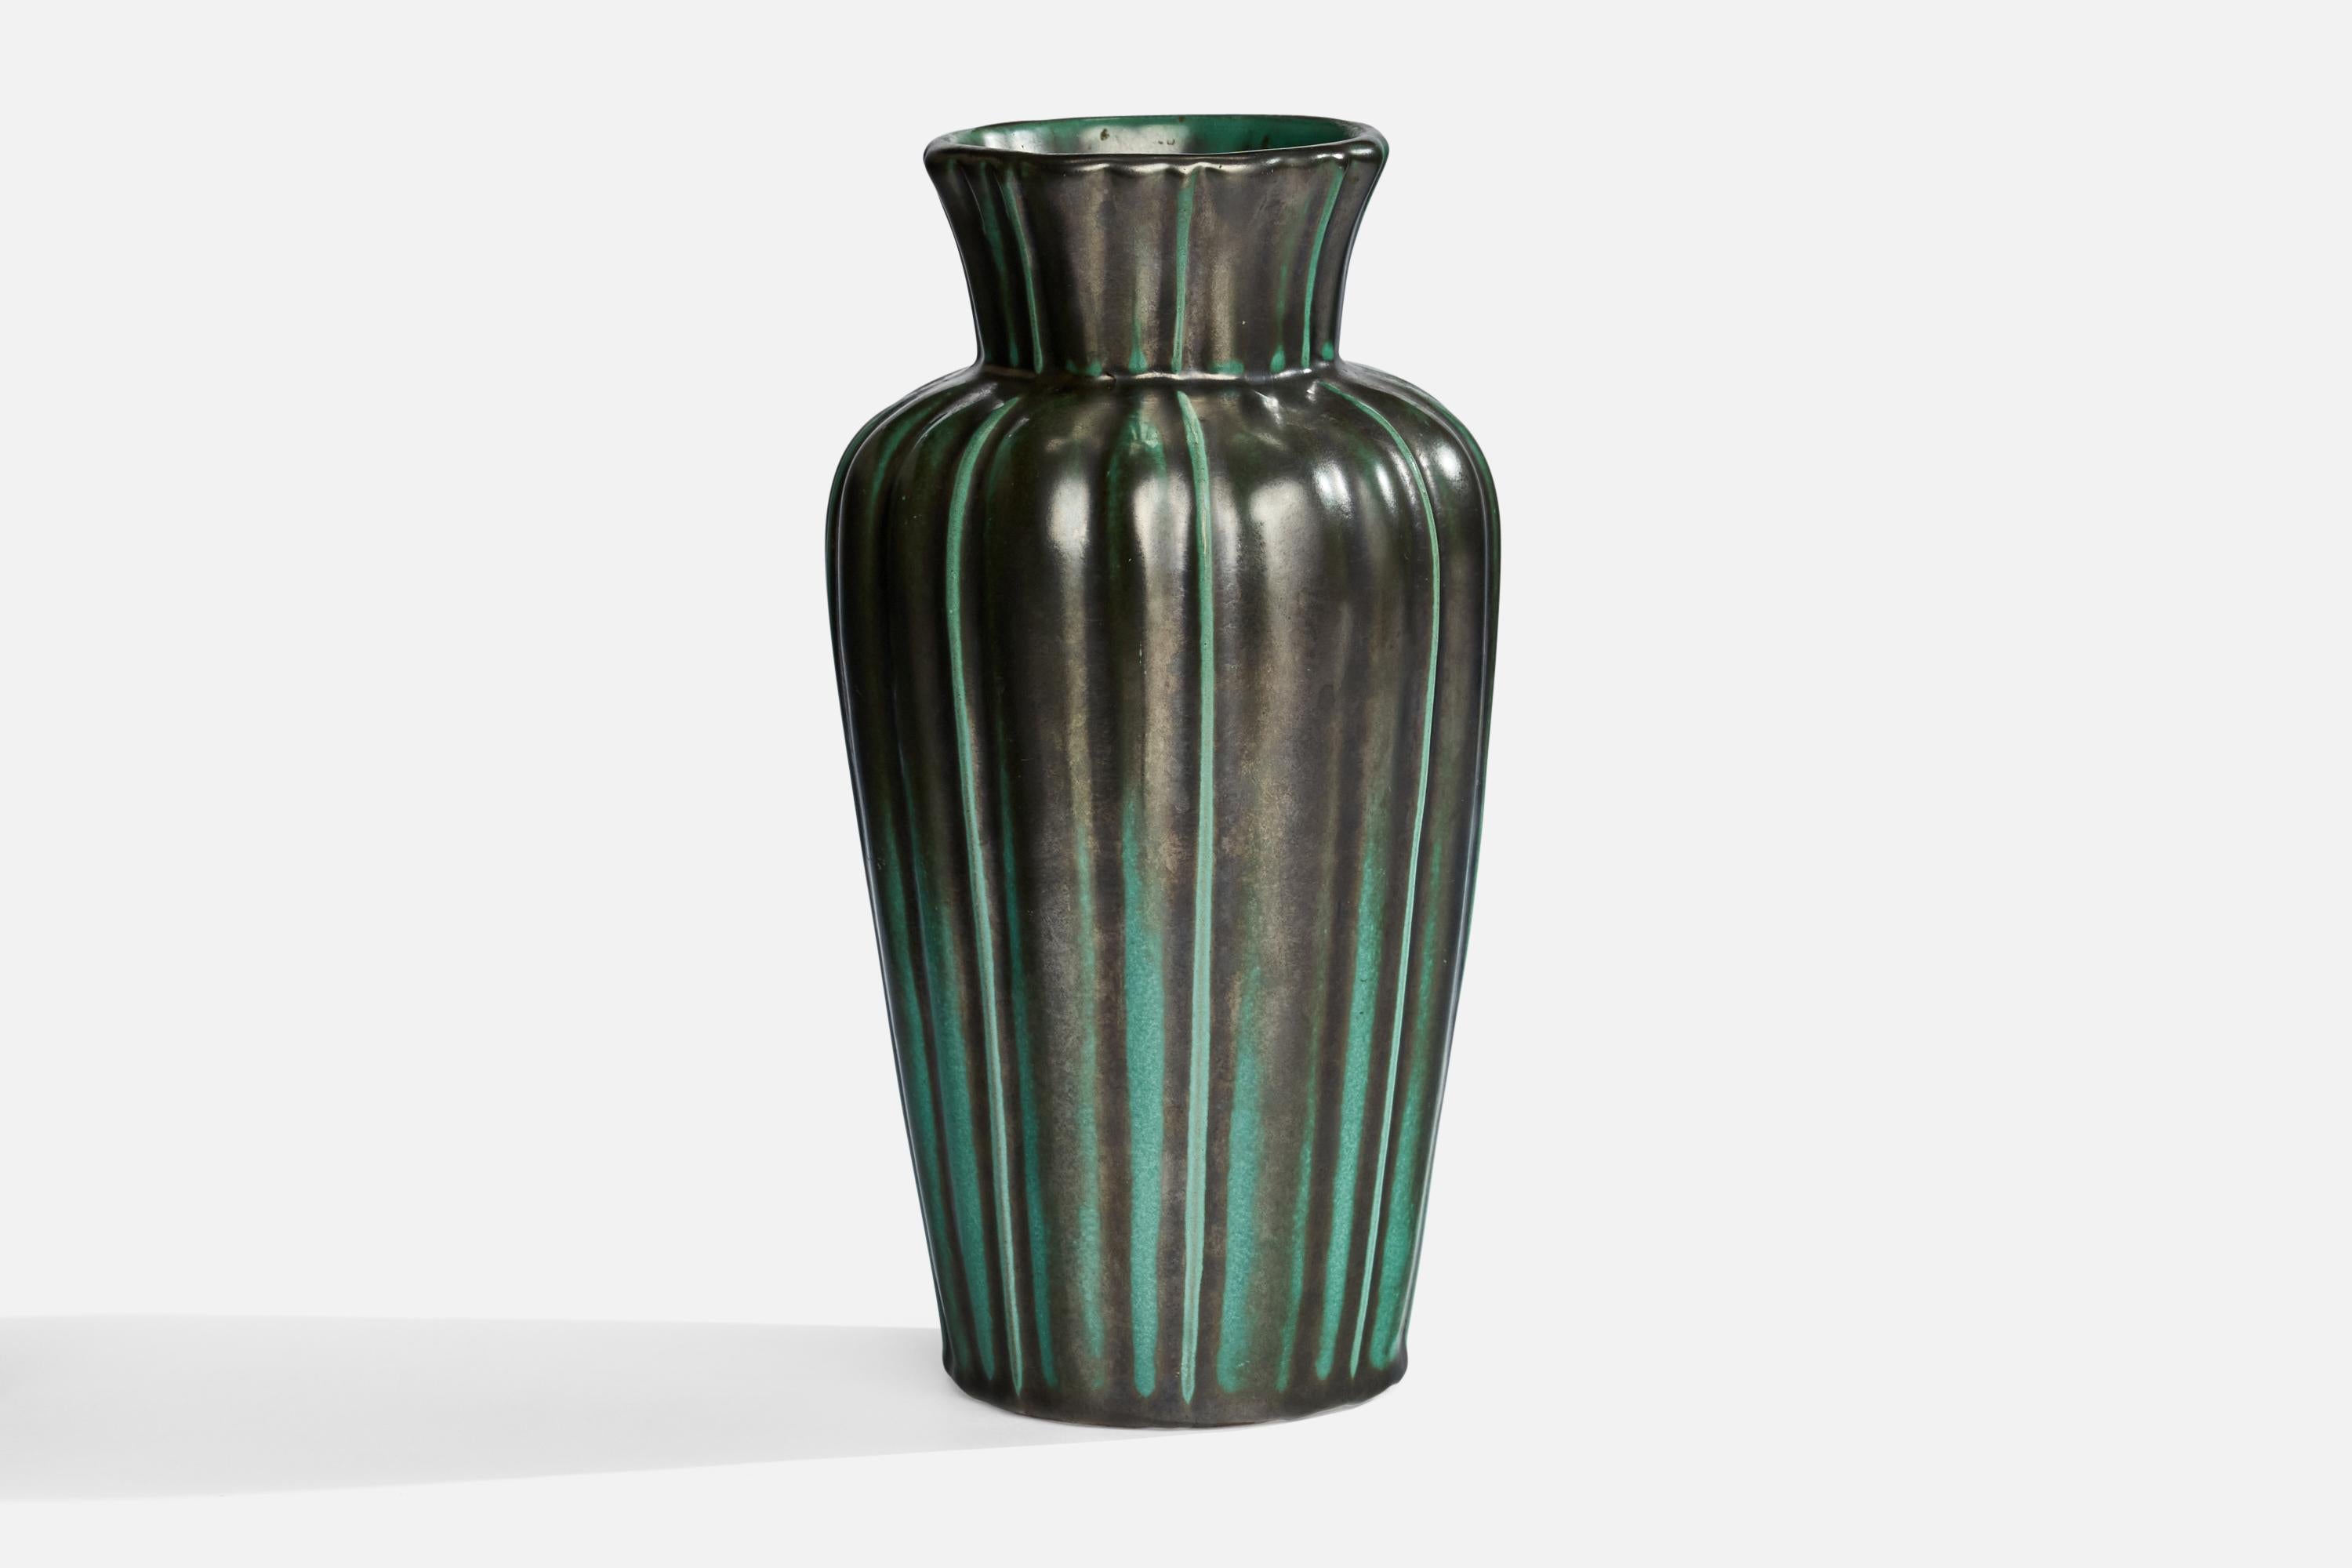 Grün glasierte, kannelierte Vase aus Steingut, entworfen und hergestellt von Upsala Ekeby, Schweden, 1930er Jahre.